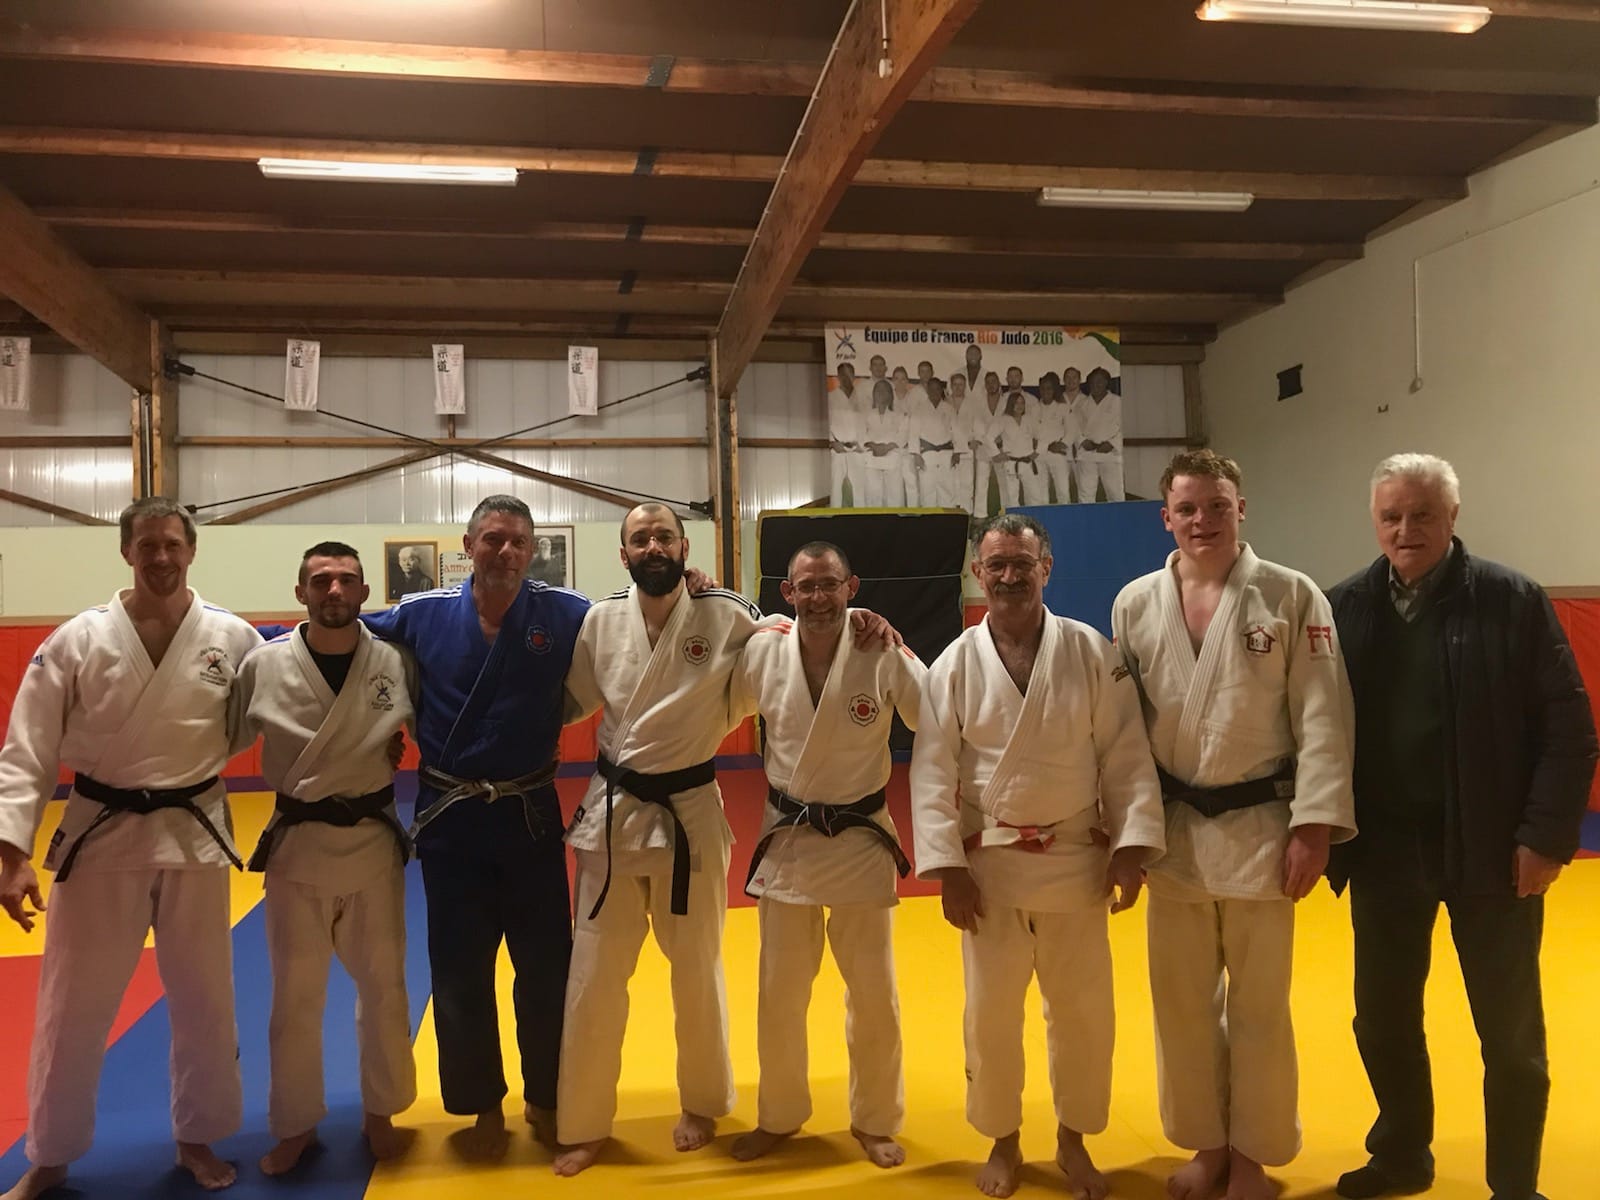 Le Comité de la Nièvre a accueilli le nouveau DTR  de la BFC, Olivier CHAUVIN,   en visite dans le departement. Olivier a animé une séance d entraînement  auprès d une vingtaine de judokas  au Dojo de Varennes Vauzelles